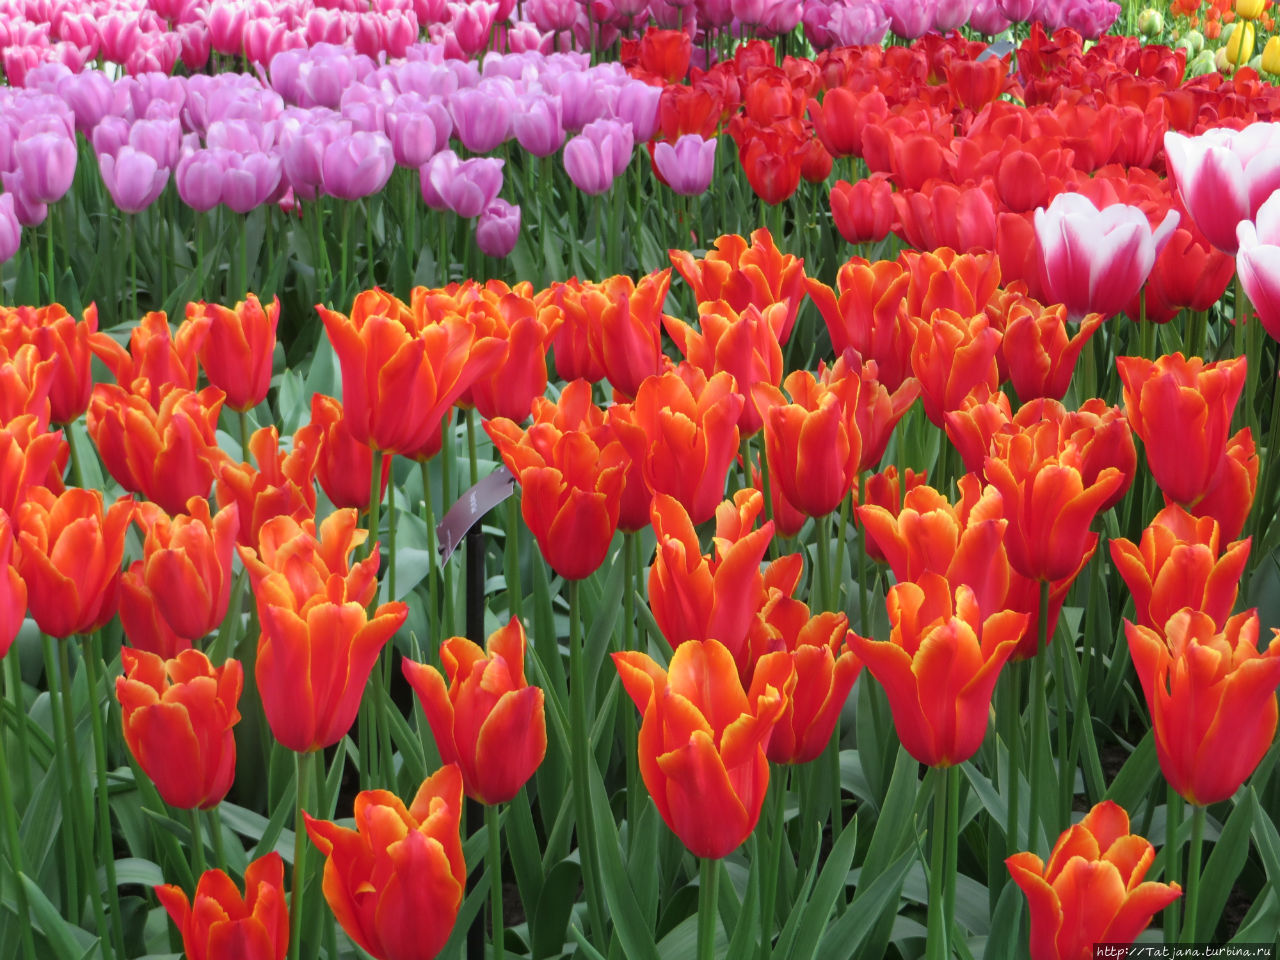 Весна в Голландии  в   парке Keukenhof Лиссе, Нидерланды